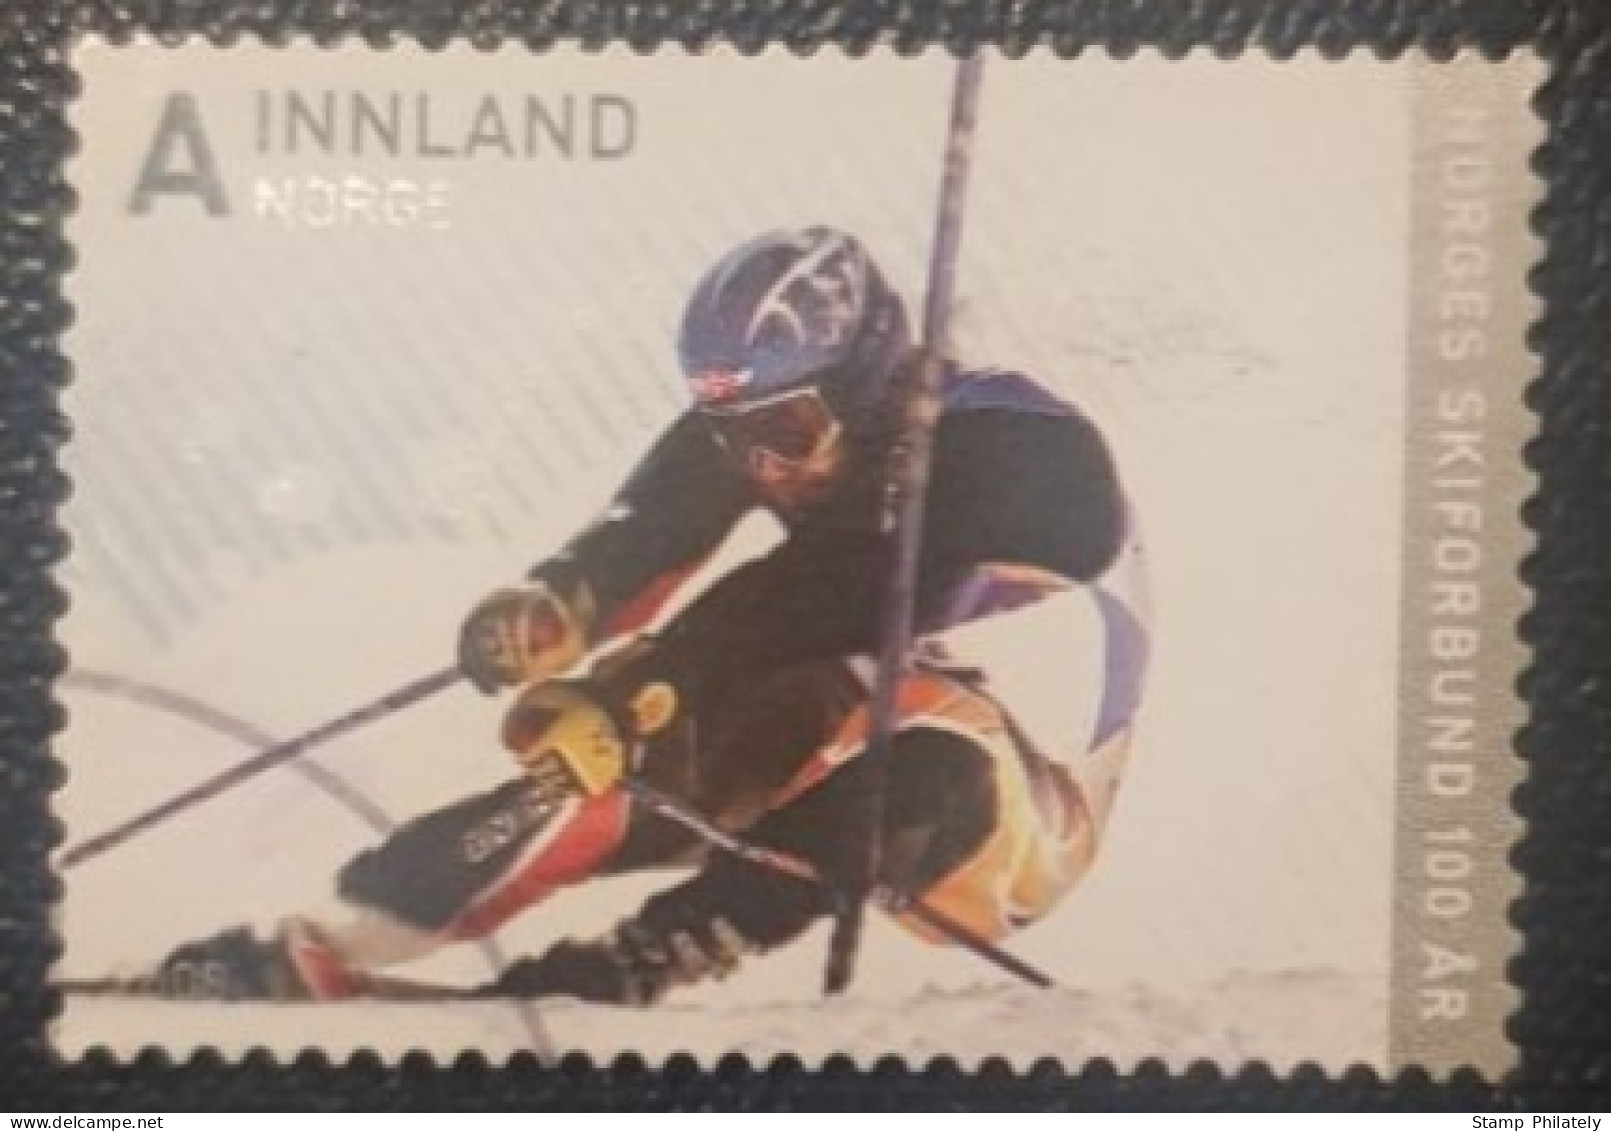 Norway Ski Federation Stamp Anniversary - Usati